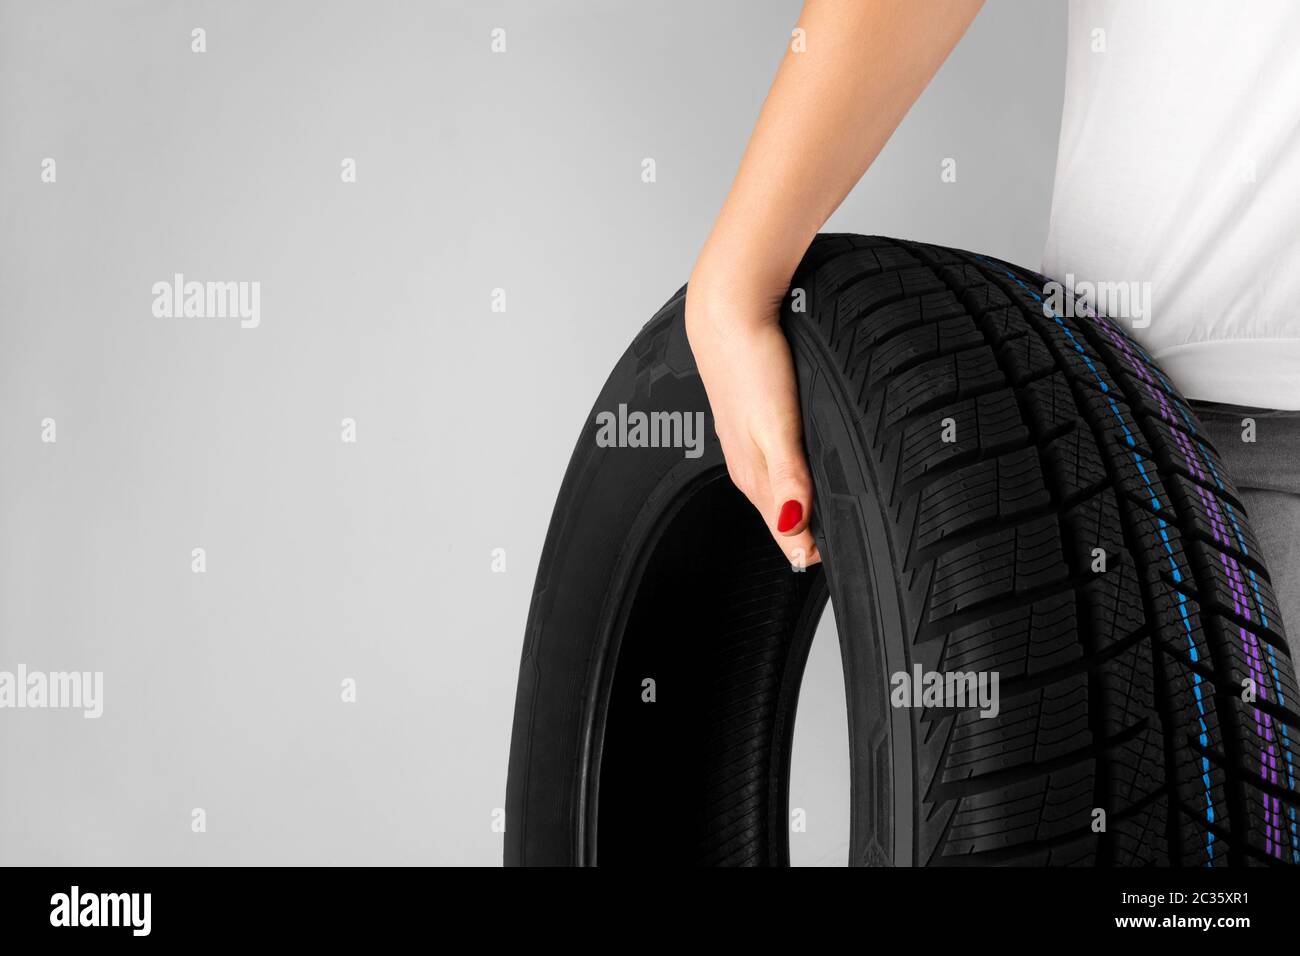 Concetto creativo ragazza che indossa la gomma dell'automobile. Simbolo di duro lavoro, femminismo. Uguaglianza di genere, diversità. Foto Stock